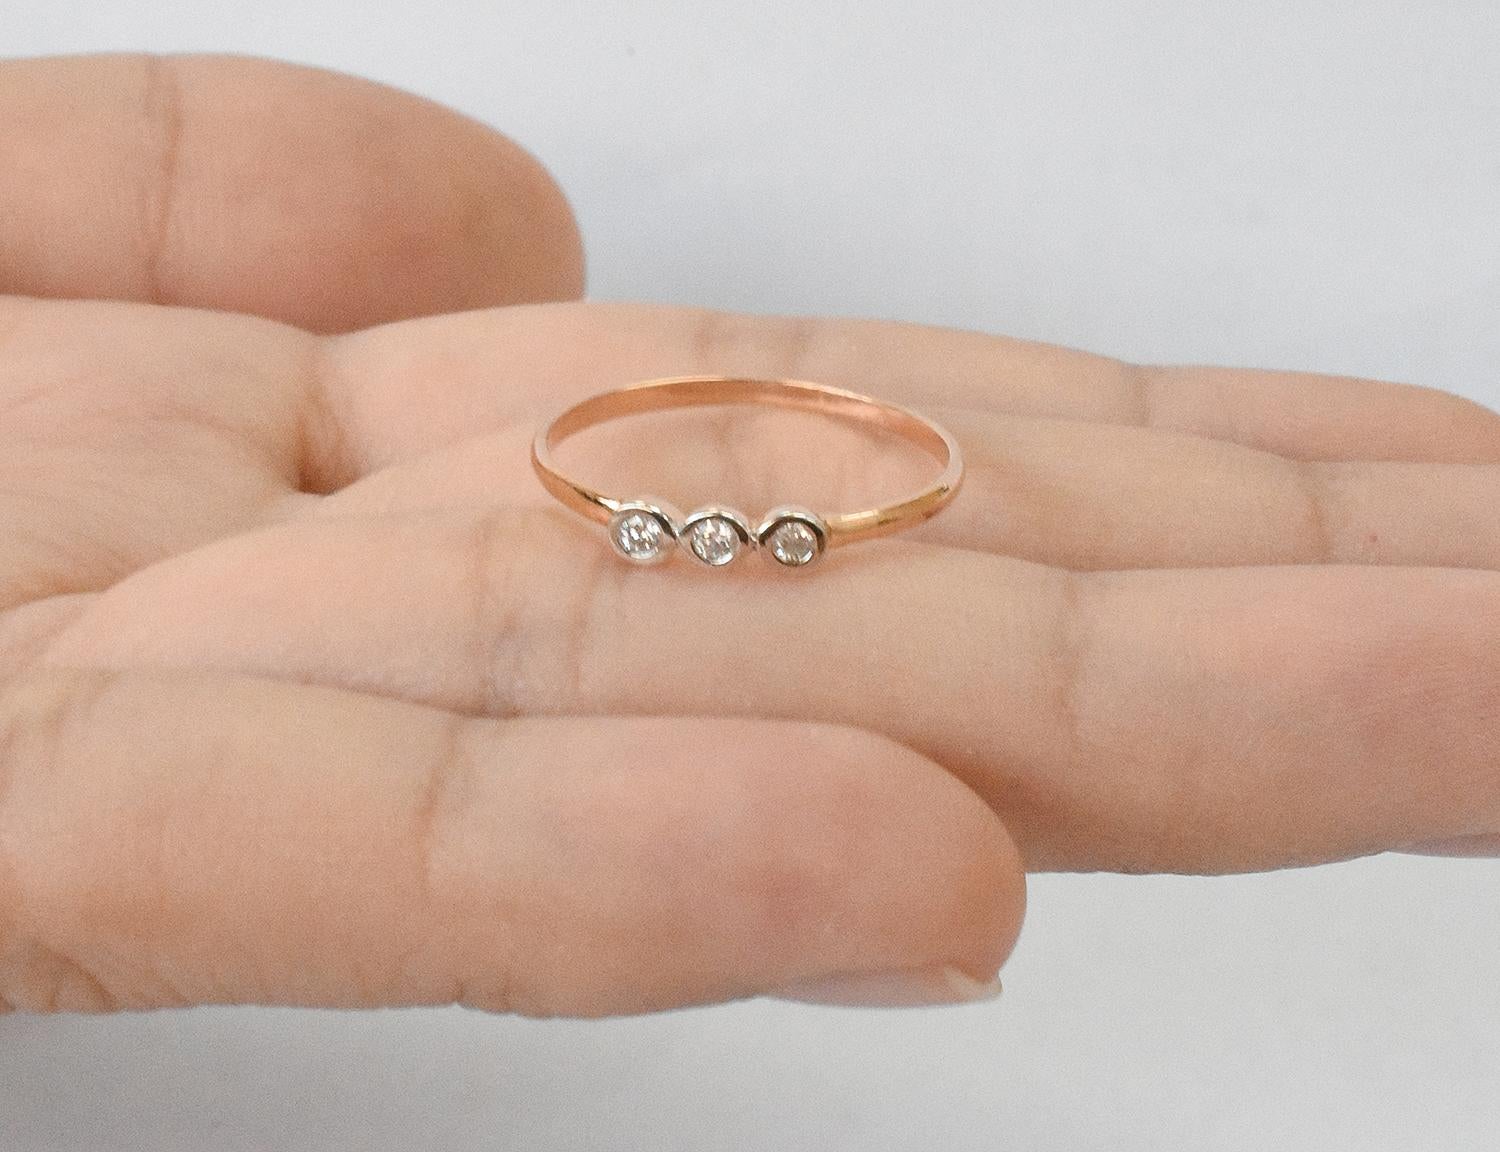 For Sale:  18k Gold Diamond 1.9 mm Ring Bezel Setting Three Diamond Ring Trio Diamond Ring 7